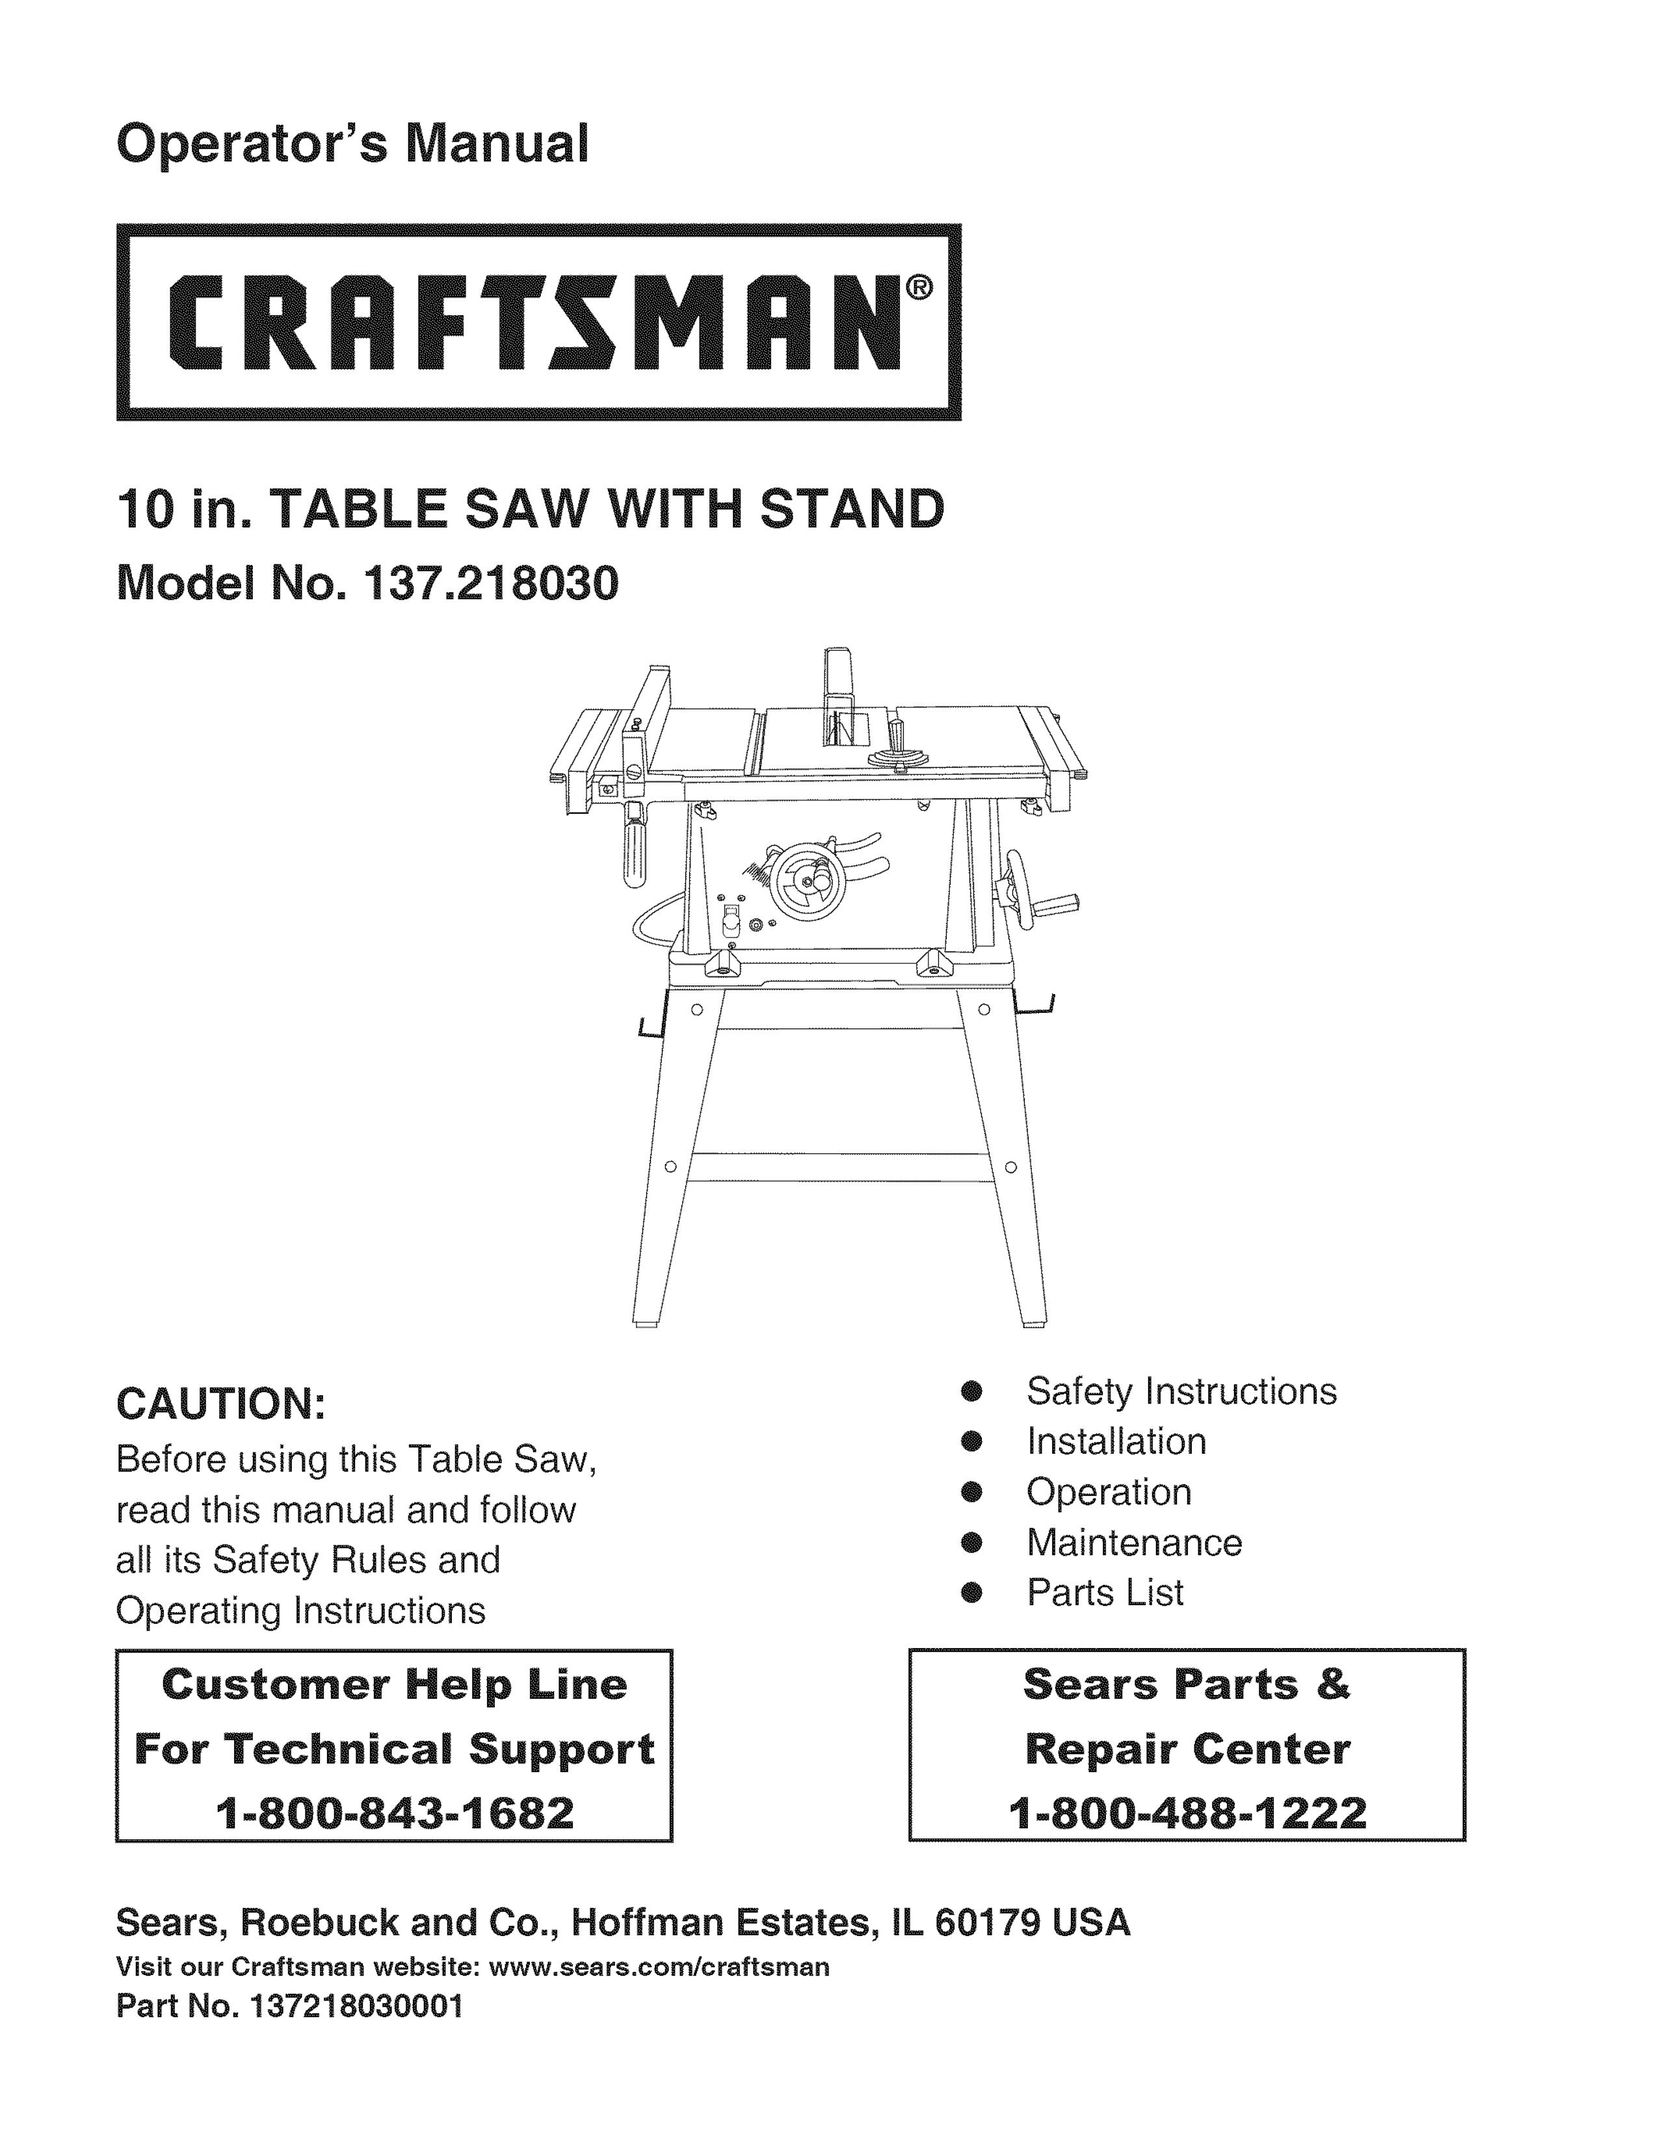 Craftsman 137.218030 Saw User Manual